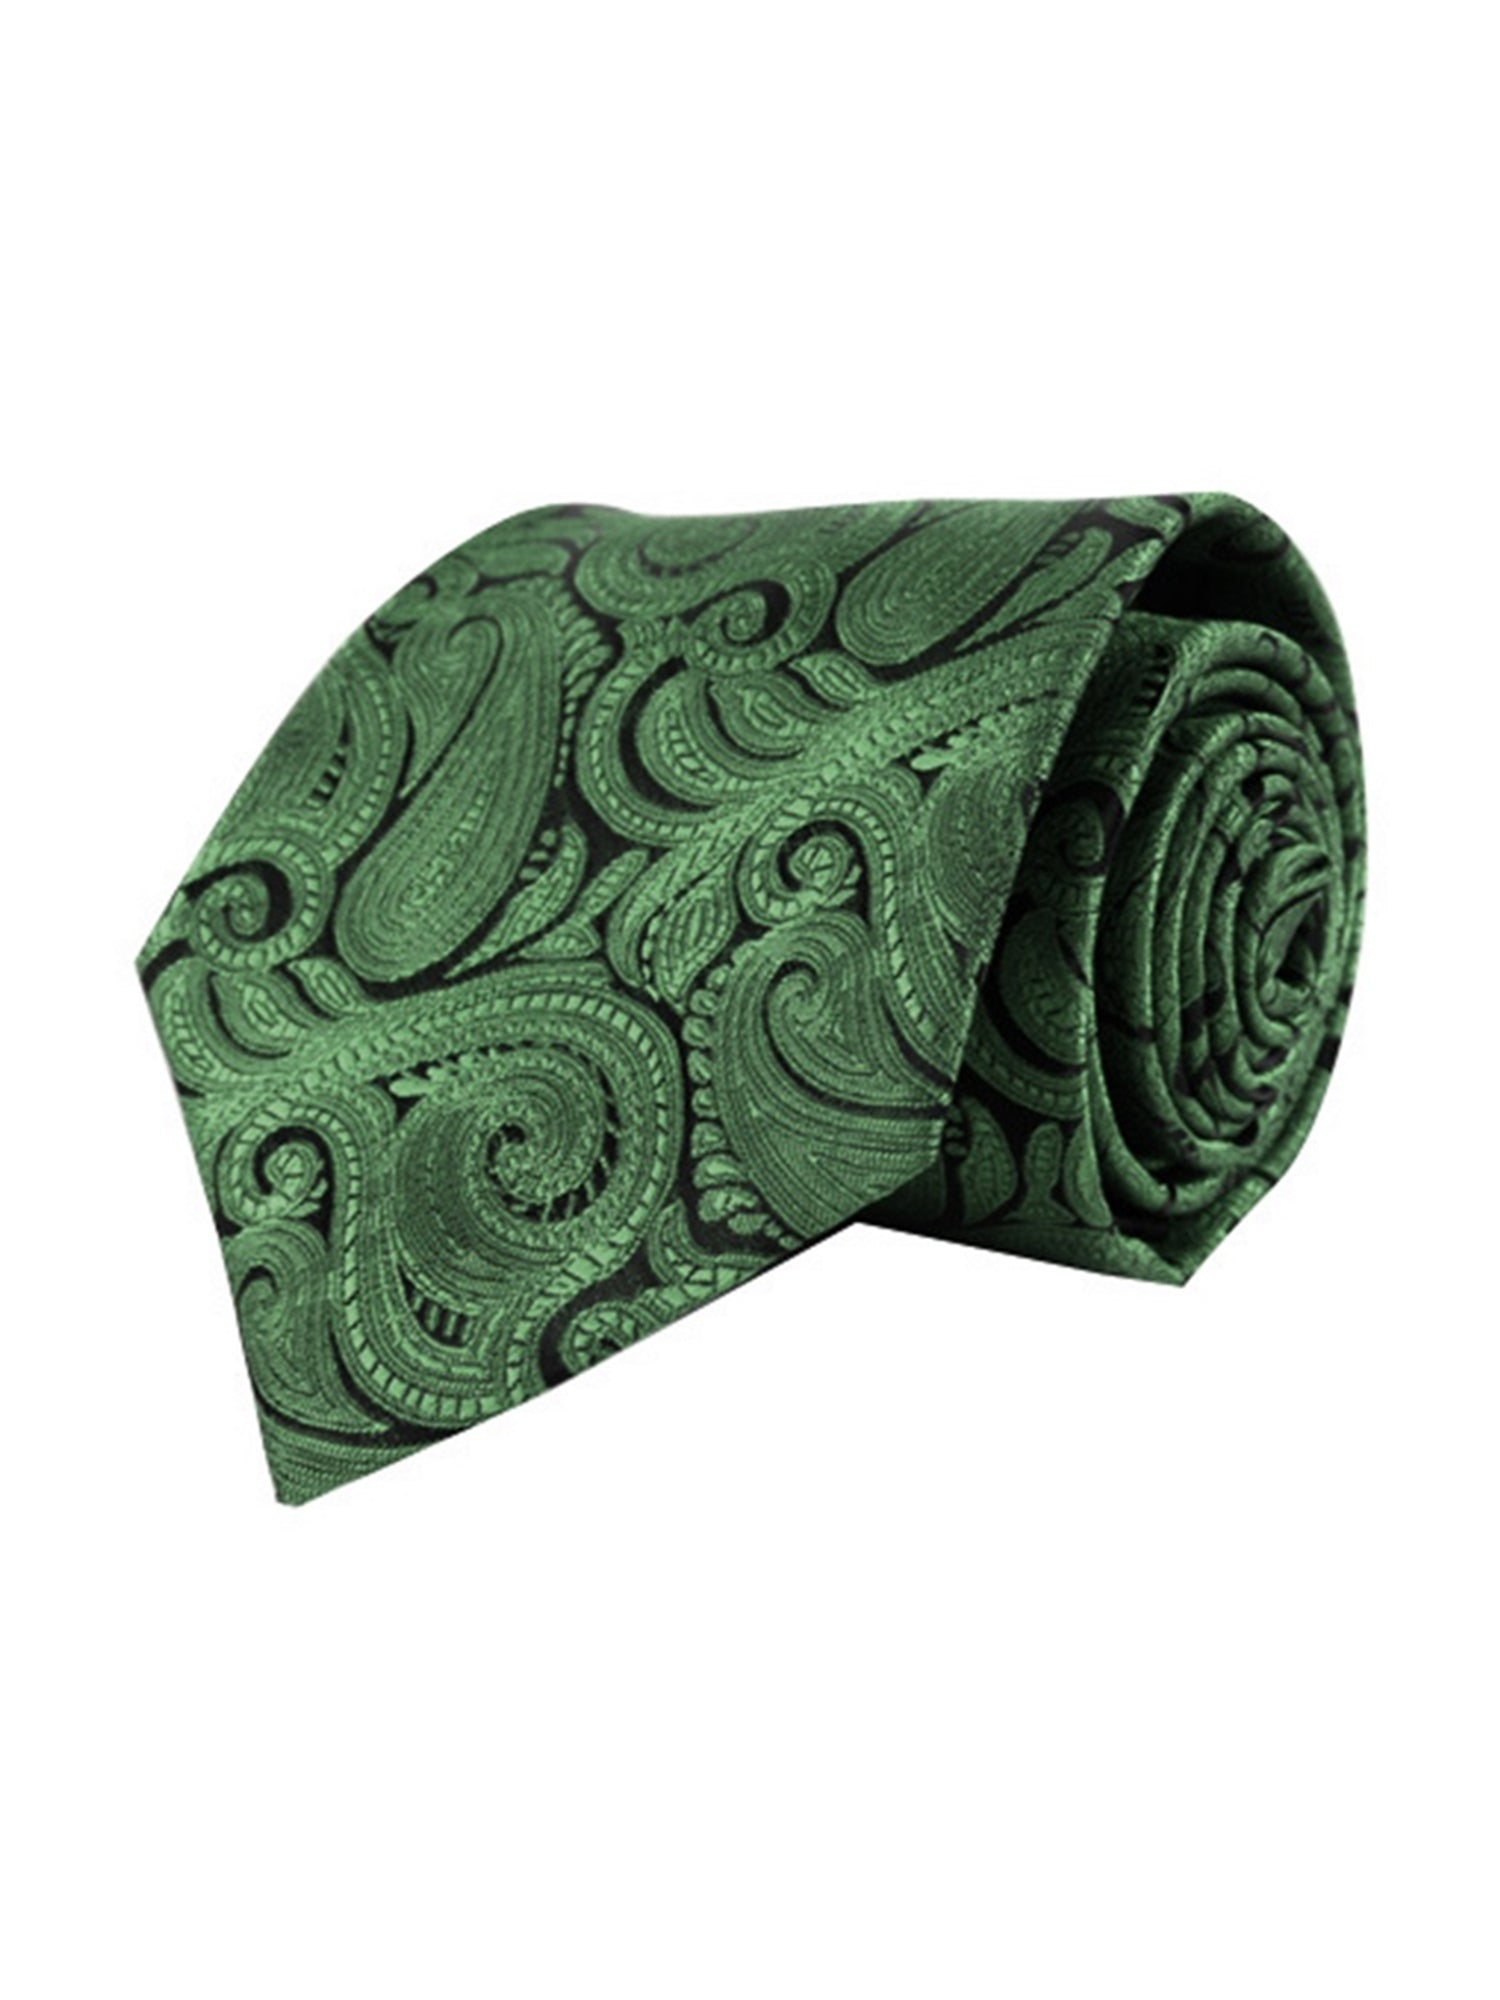 Men's Paisley Microfiber Poly Woven Wedding Neck Tie Neck Tie TheDapperTie Green Regular 